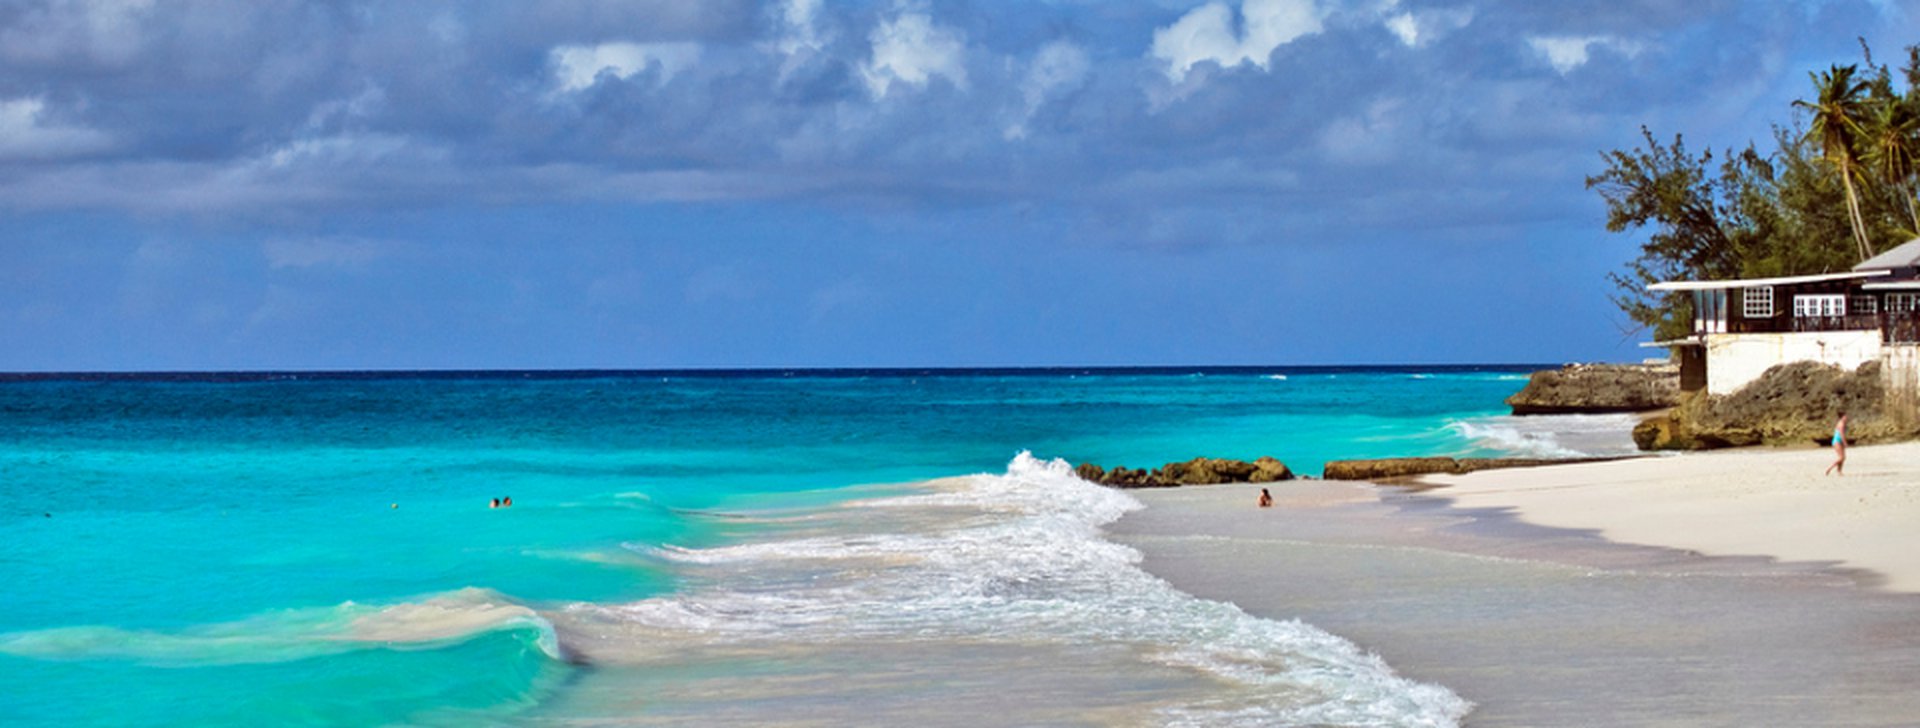 Reiseziele Barbados